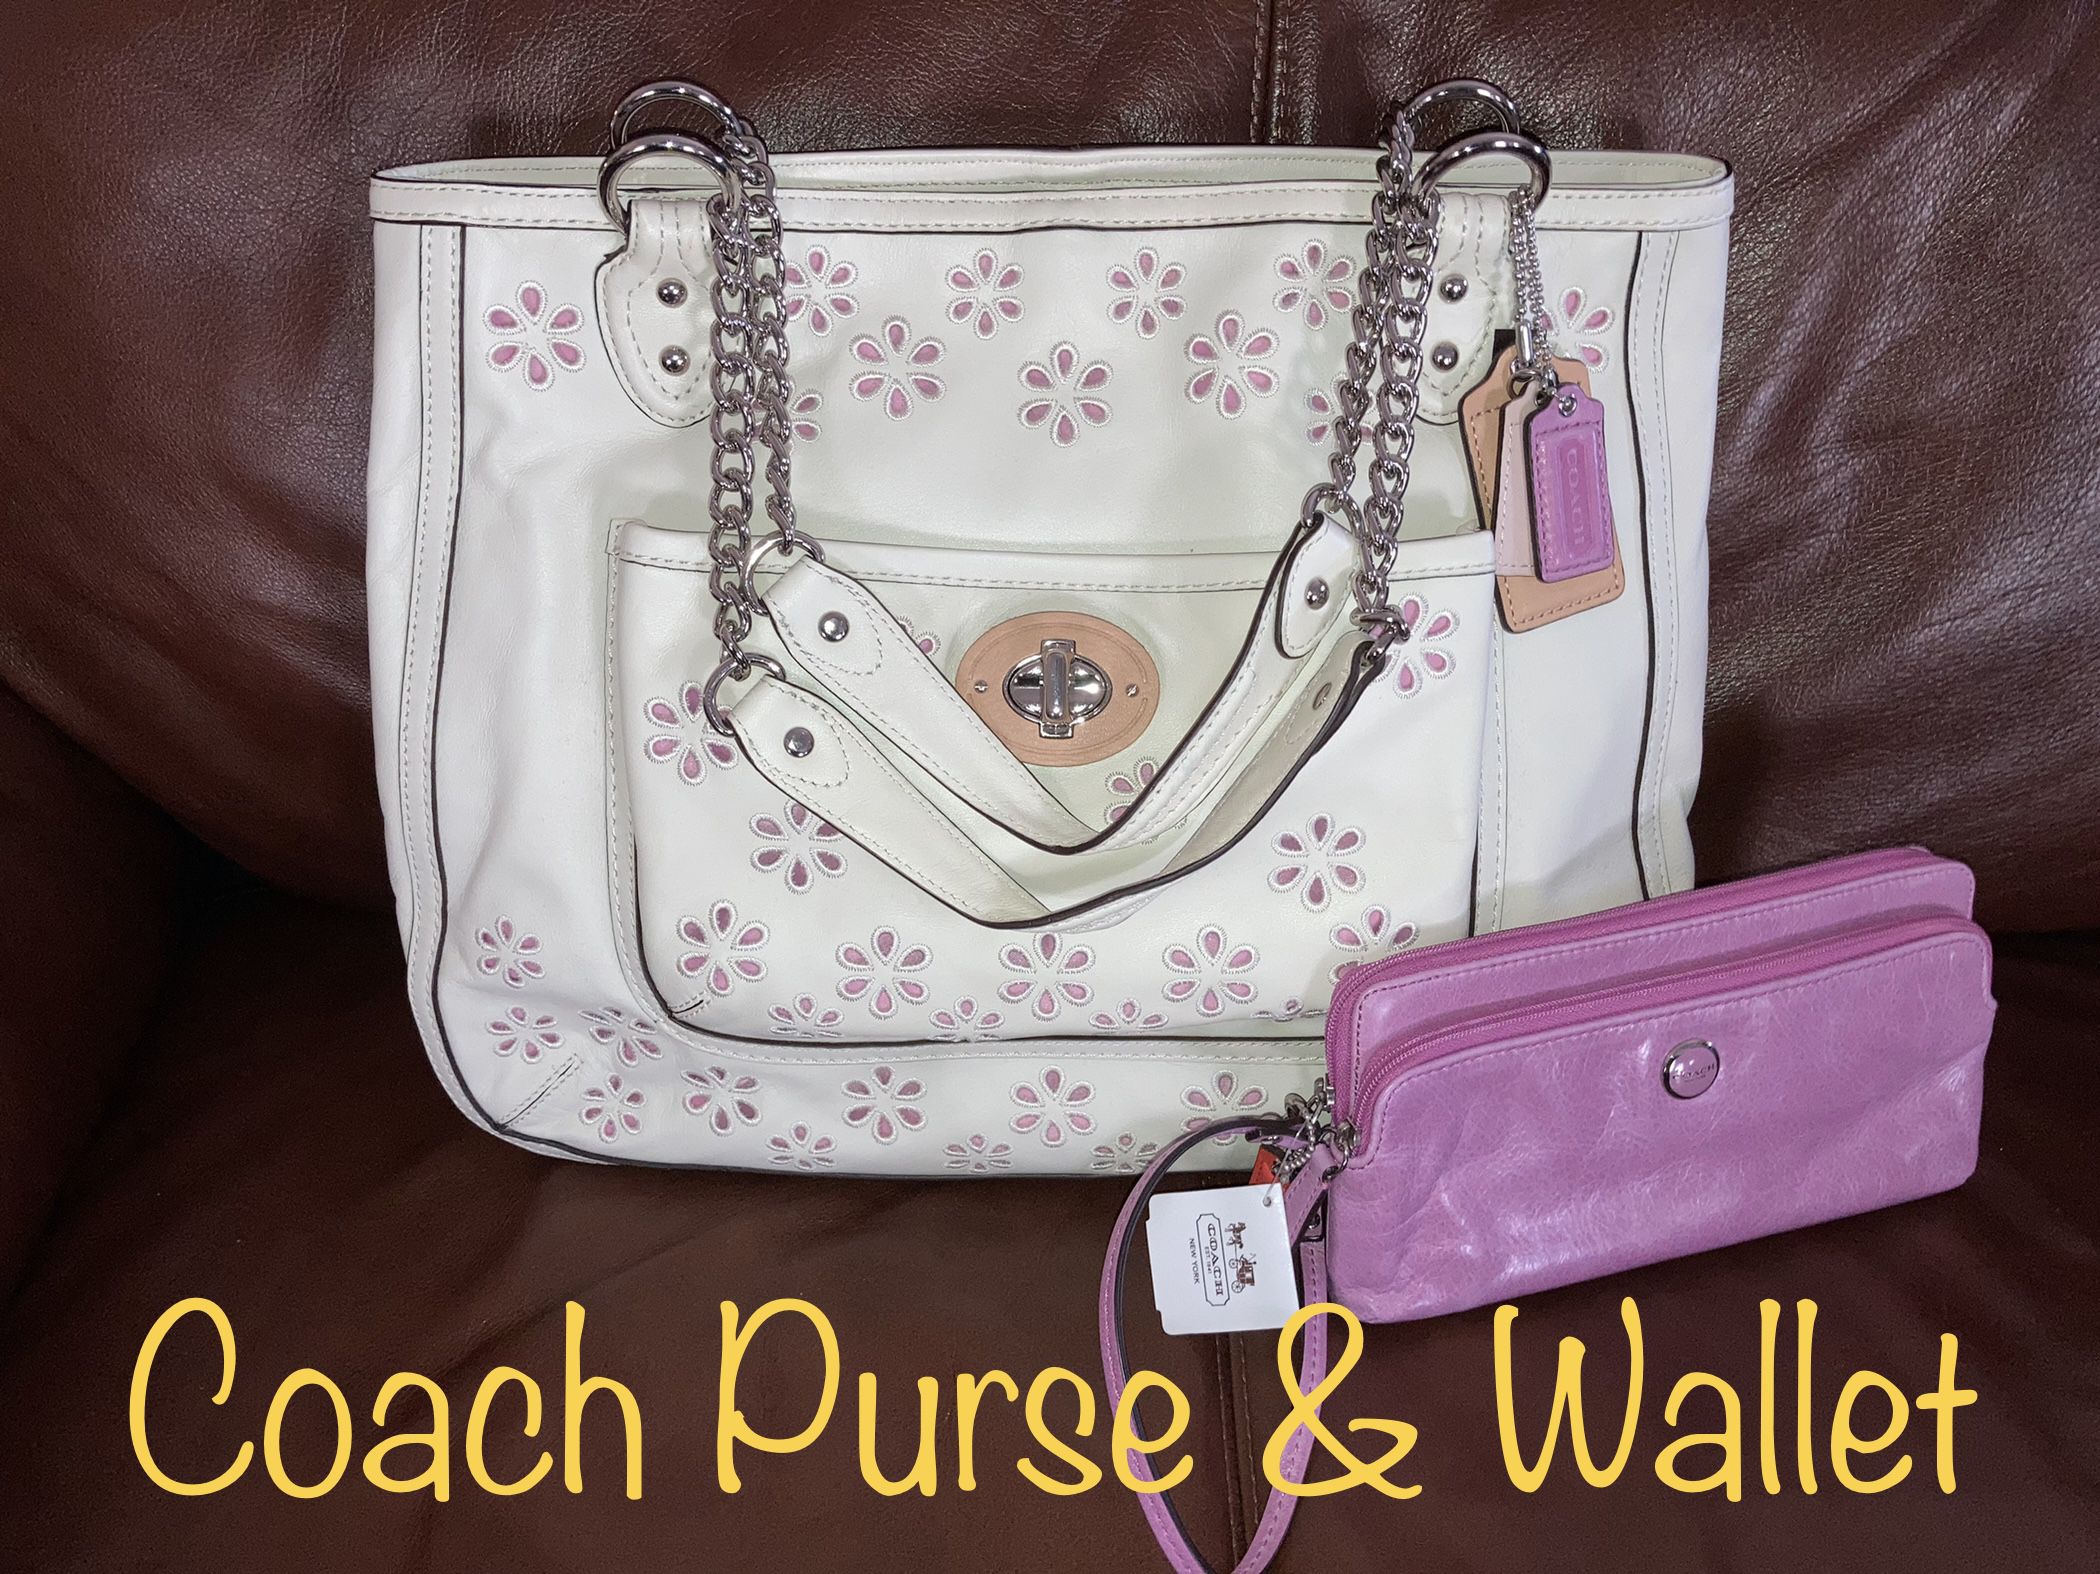 Coach purse & wallet NWT